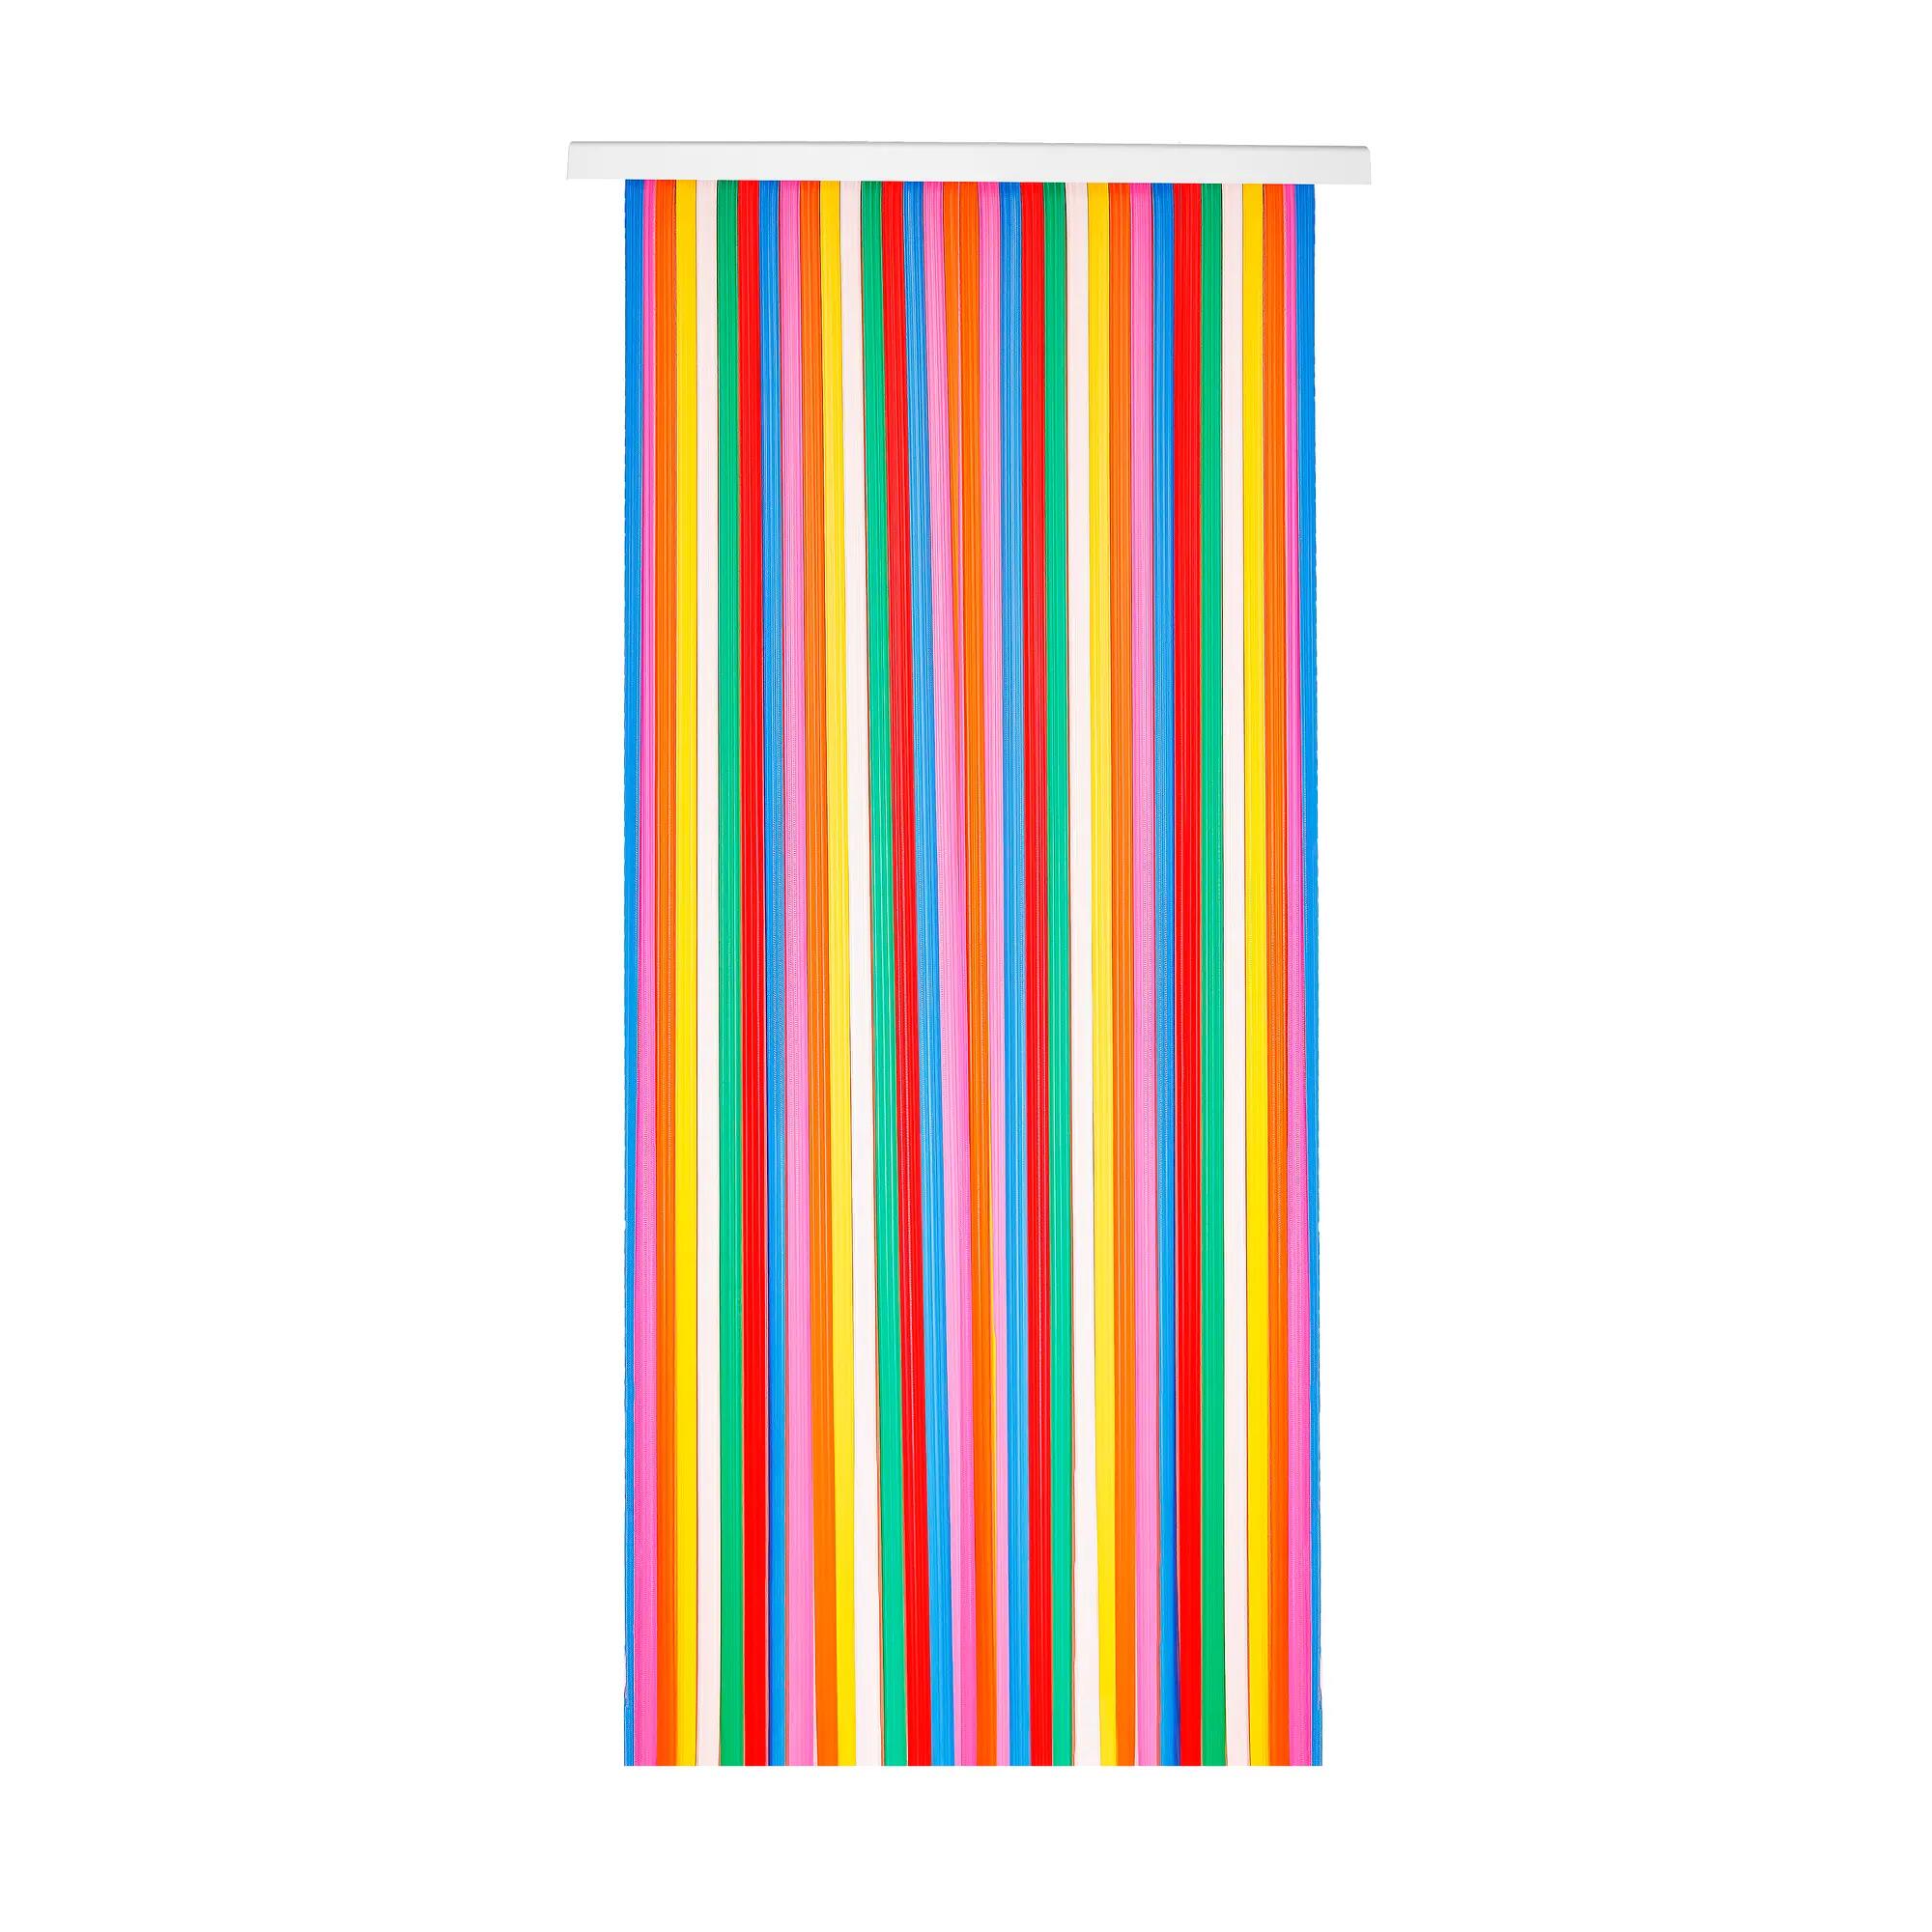 Cortina de puerta con motivo rayas pvc mijares multicolor de 120x210 cm